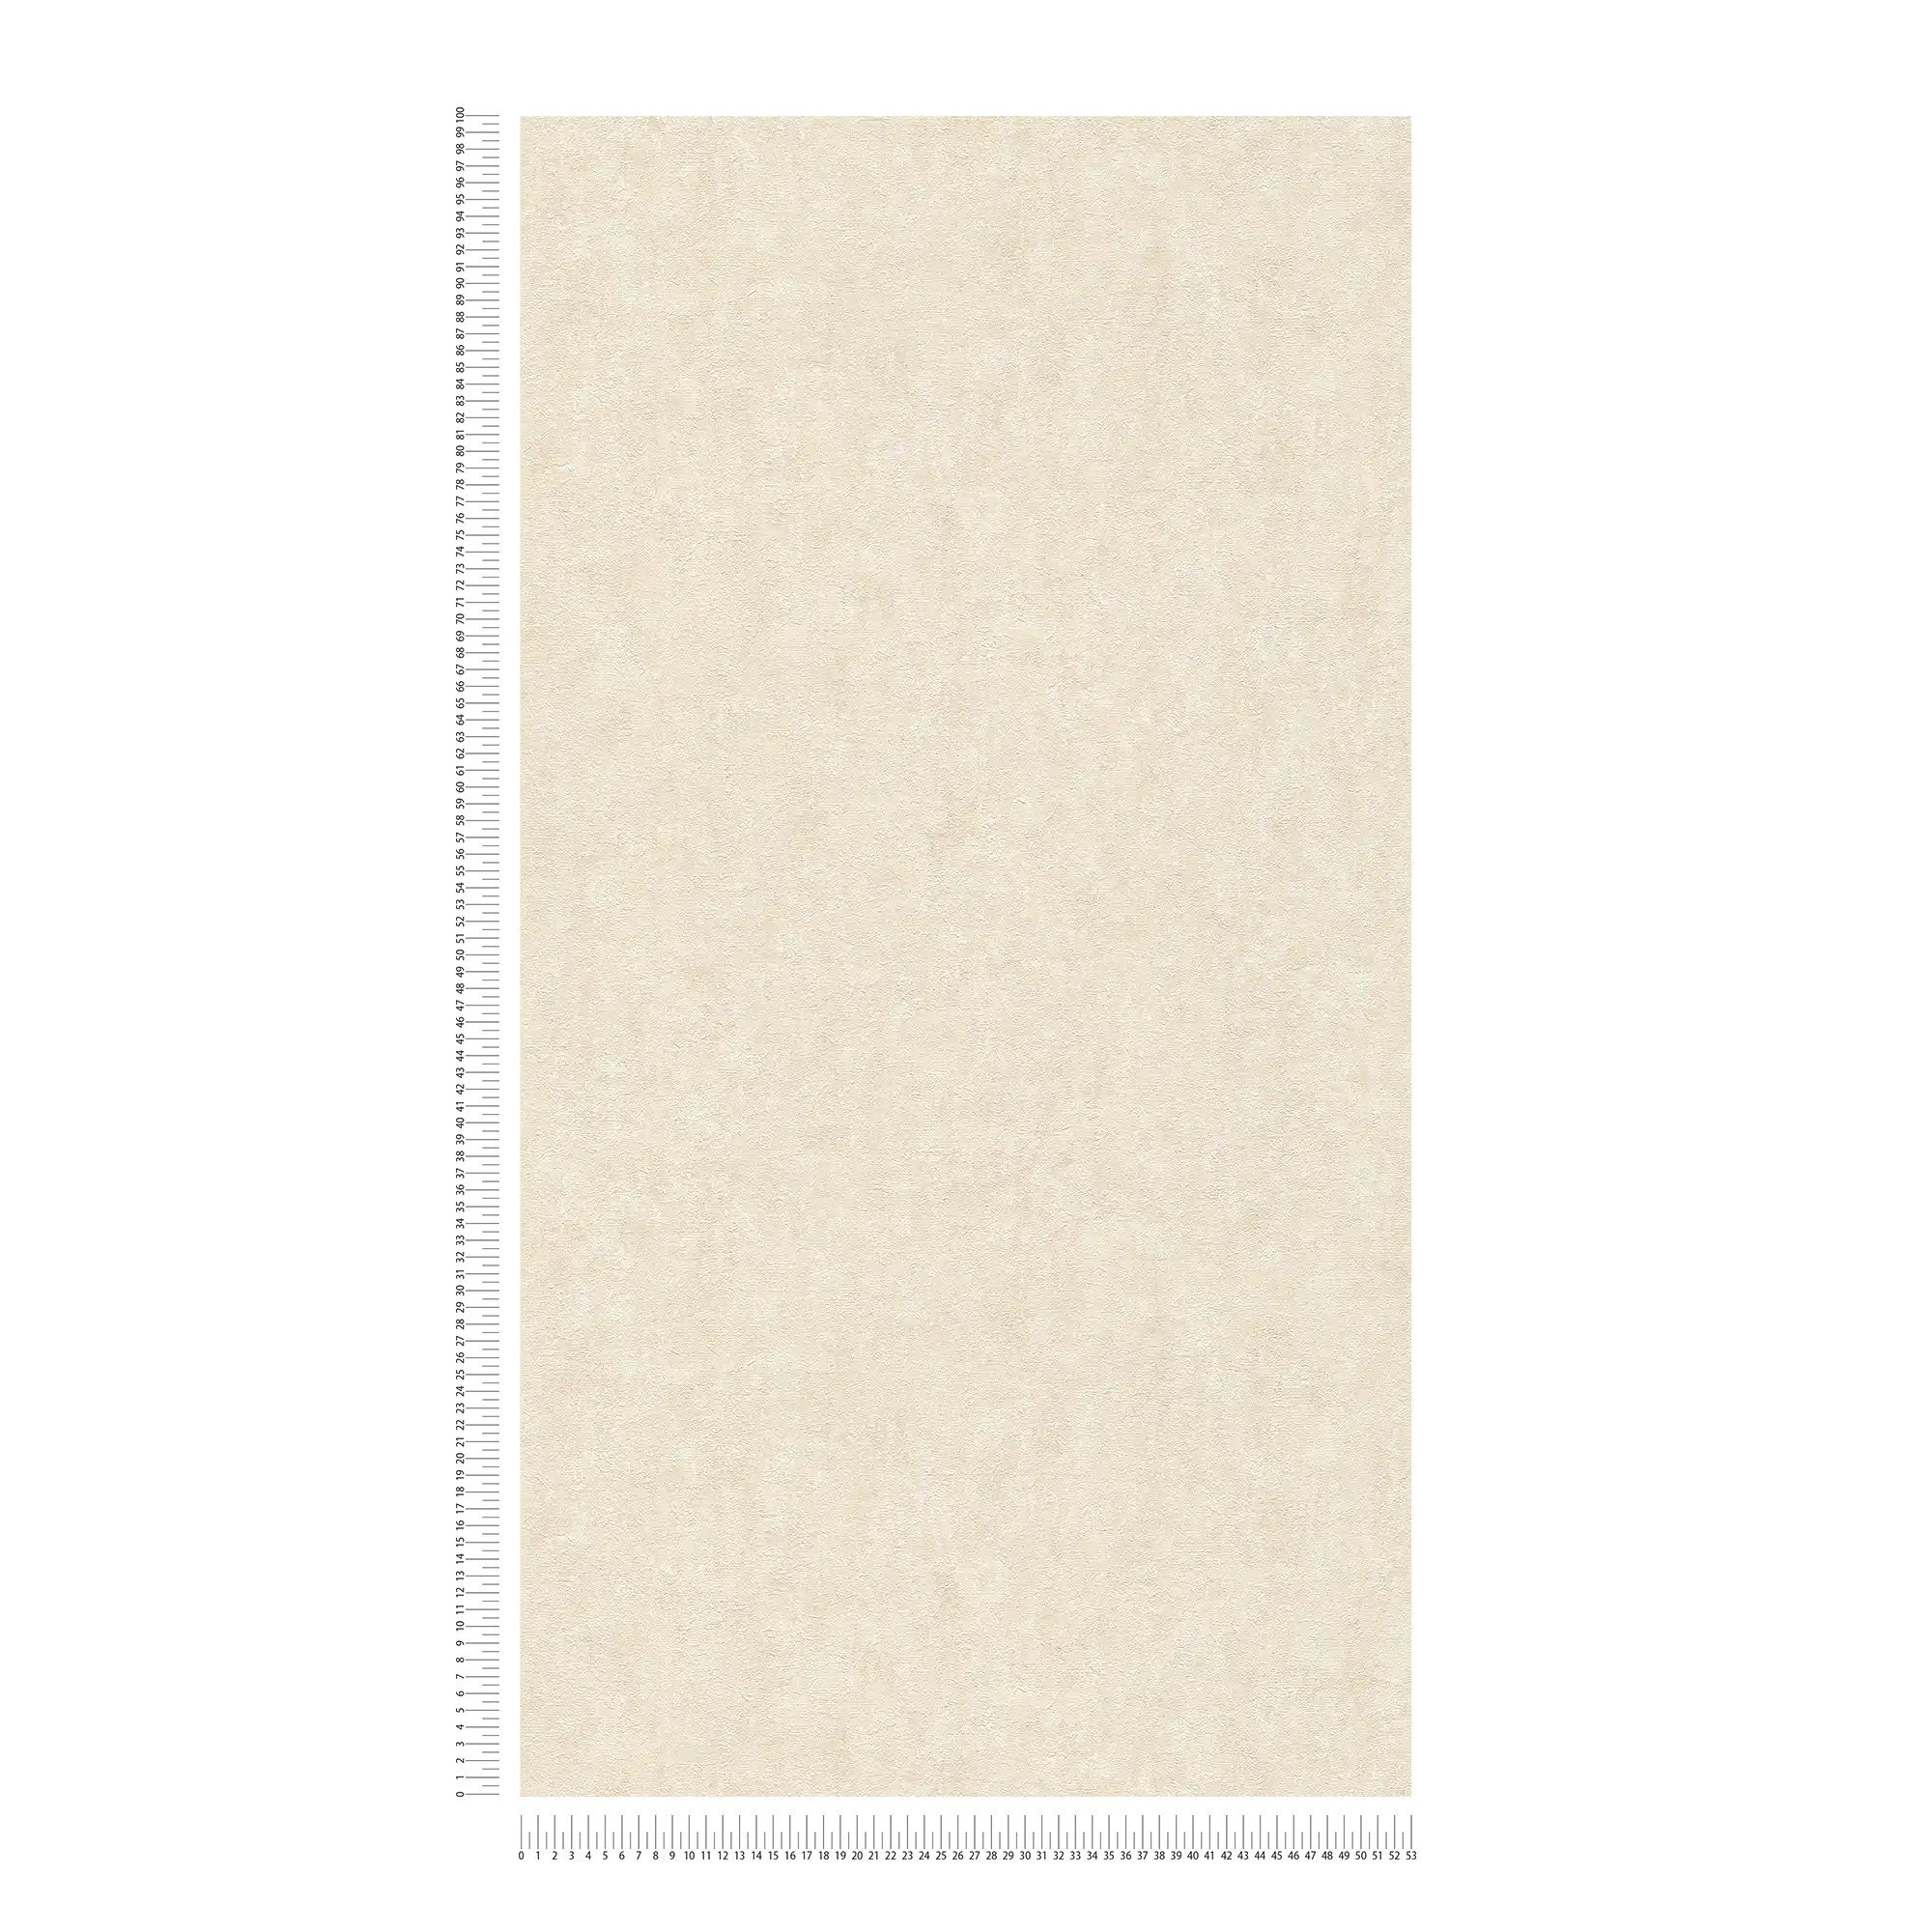             Carta da parati testurizzata in tessuto non tessuto screziato avorio - bianco, grigio, crema
        